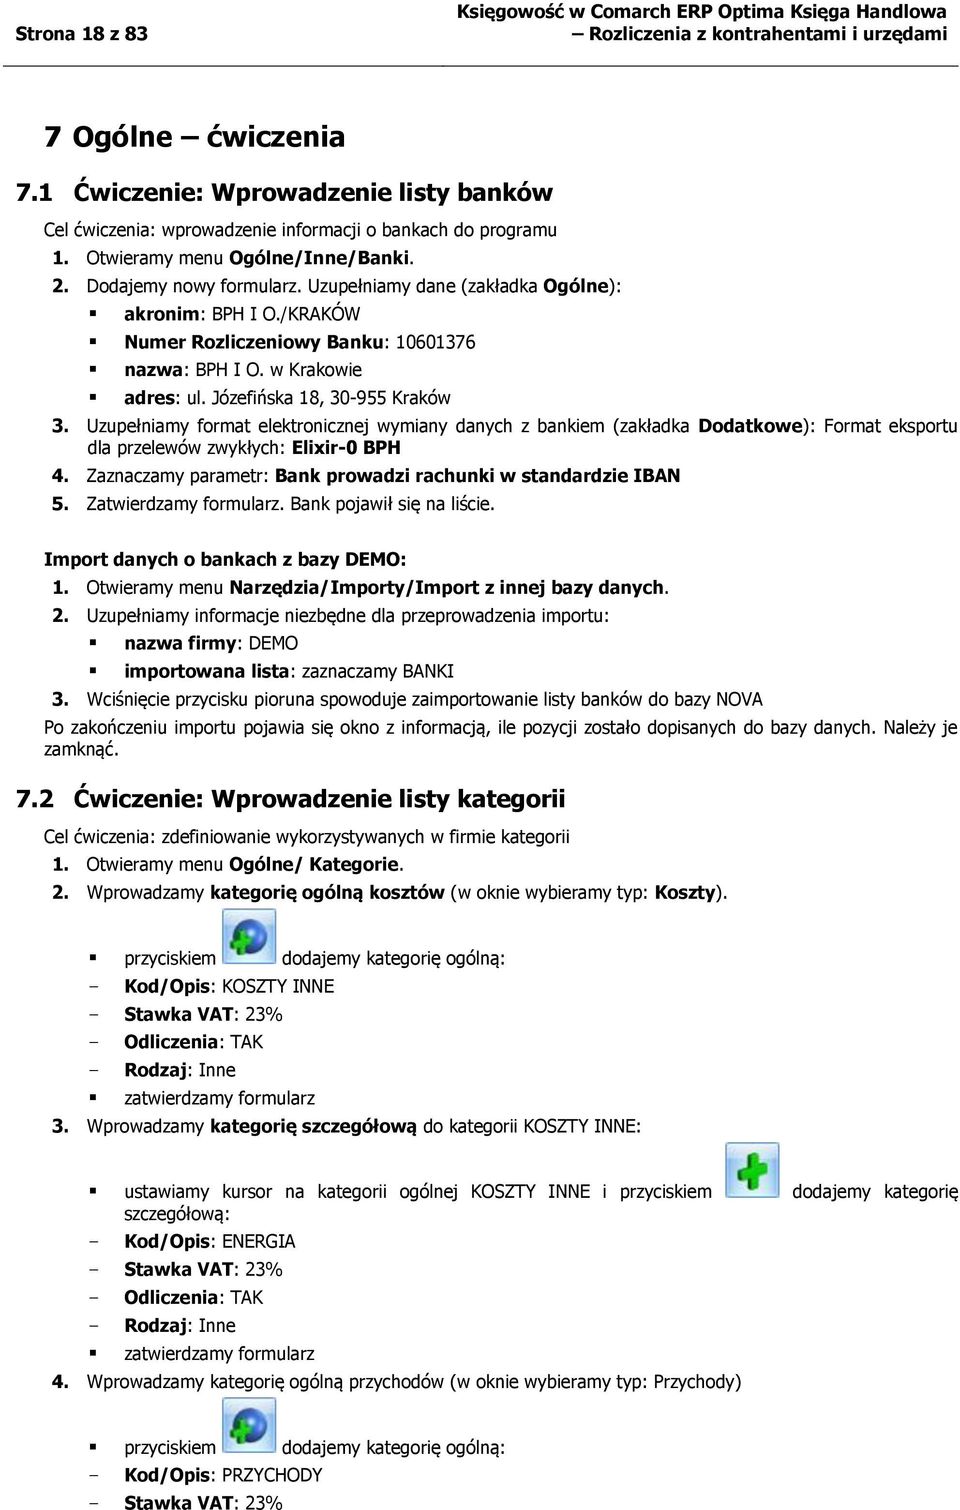 Józefińska 18, 30-955 Kraków 3. Uzupełniamy format elektronicznej wymiany danych z bankiem (zakładka Dodatkowe): Format eksportu dla przelewów zwykłych: Elixir-0 BPH 4.